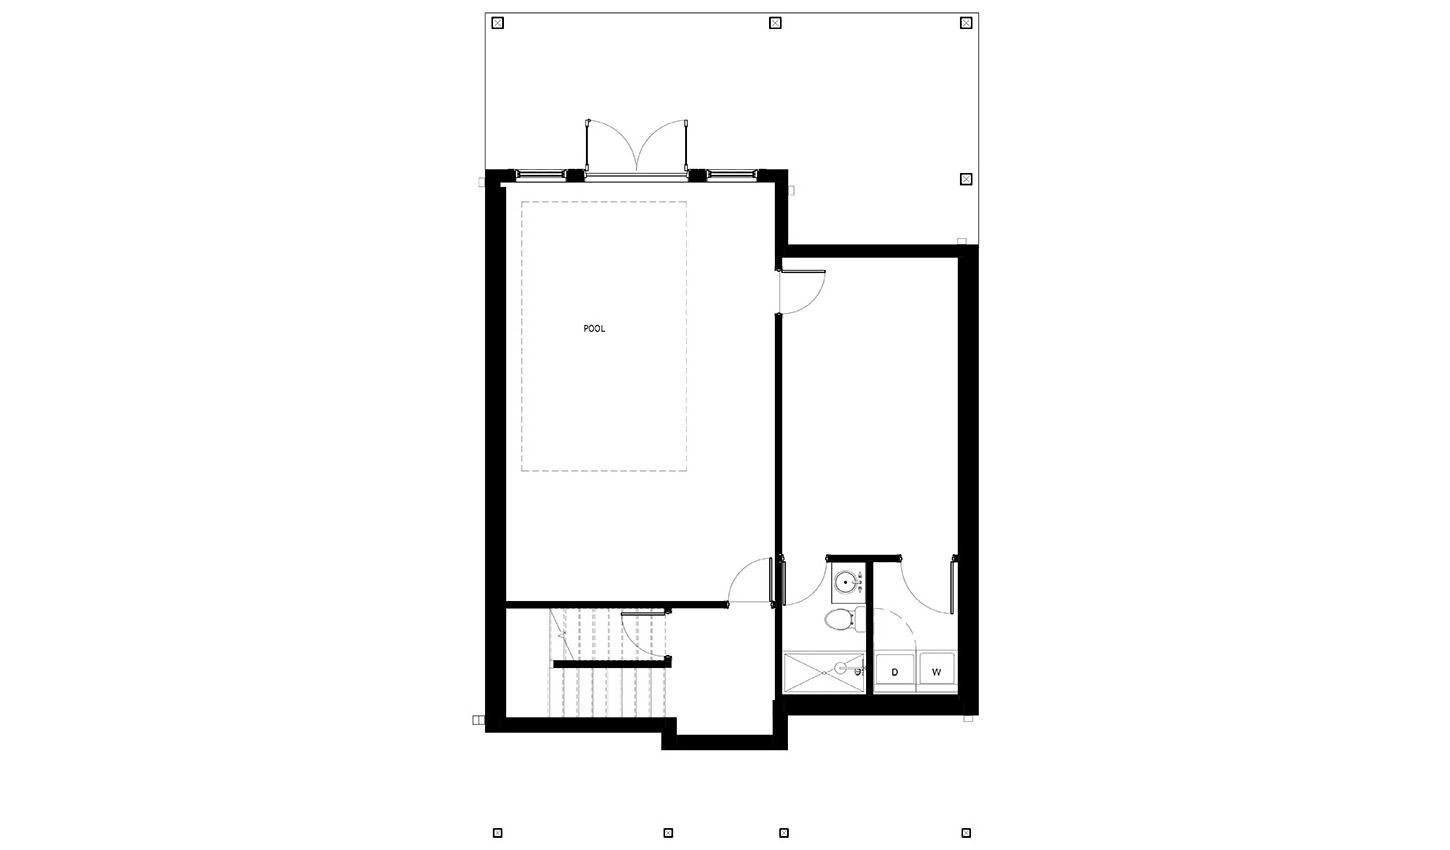 Floor plan of the 3 bedroom lower level floor plan